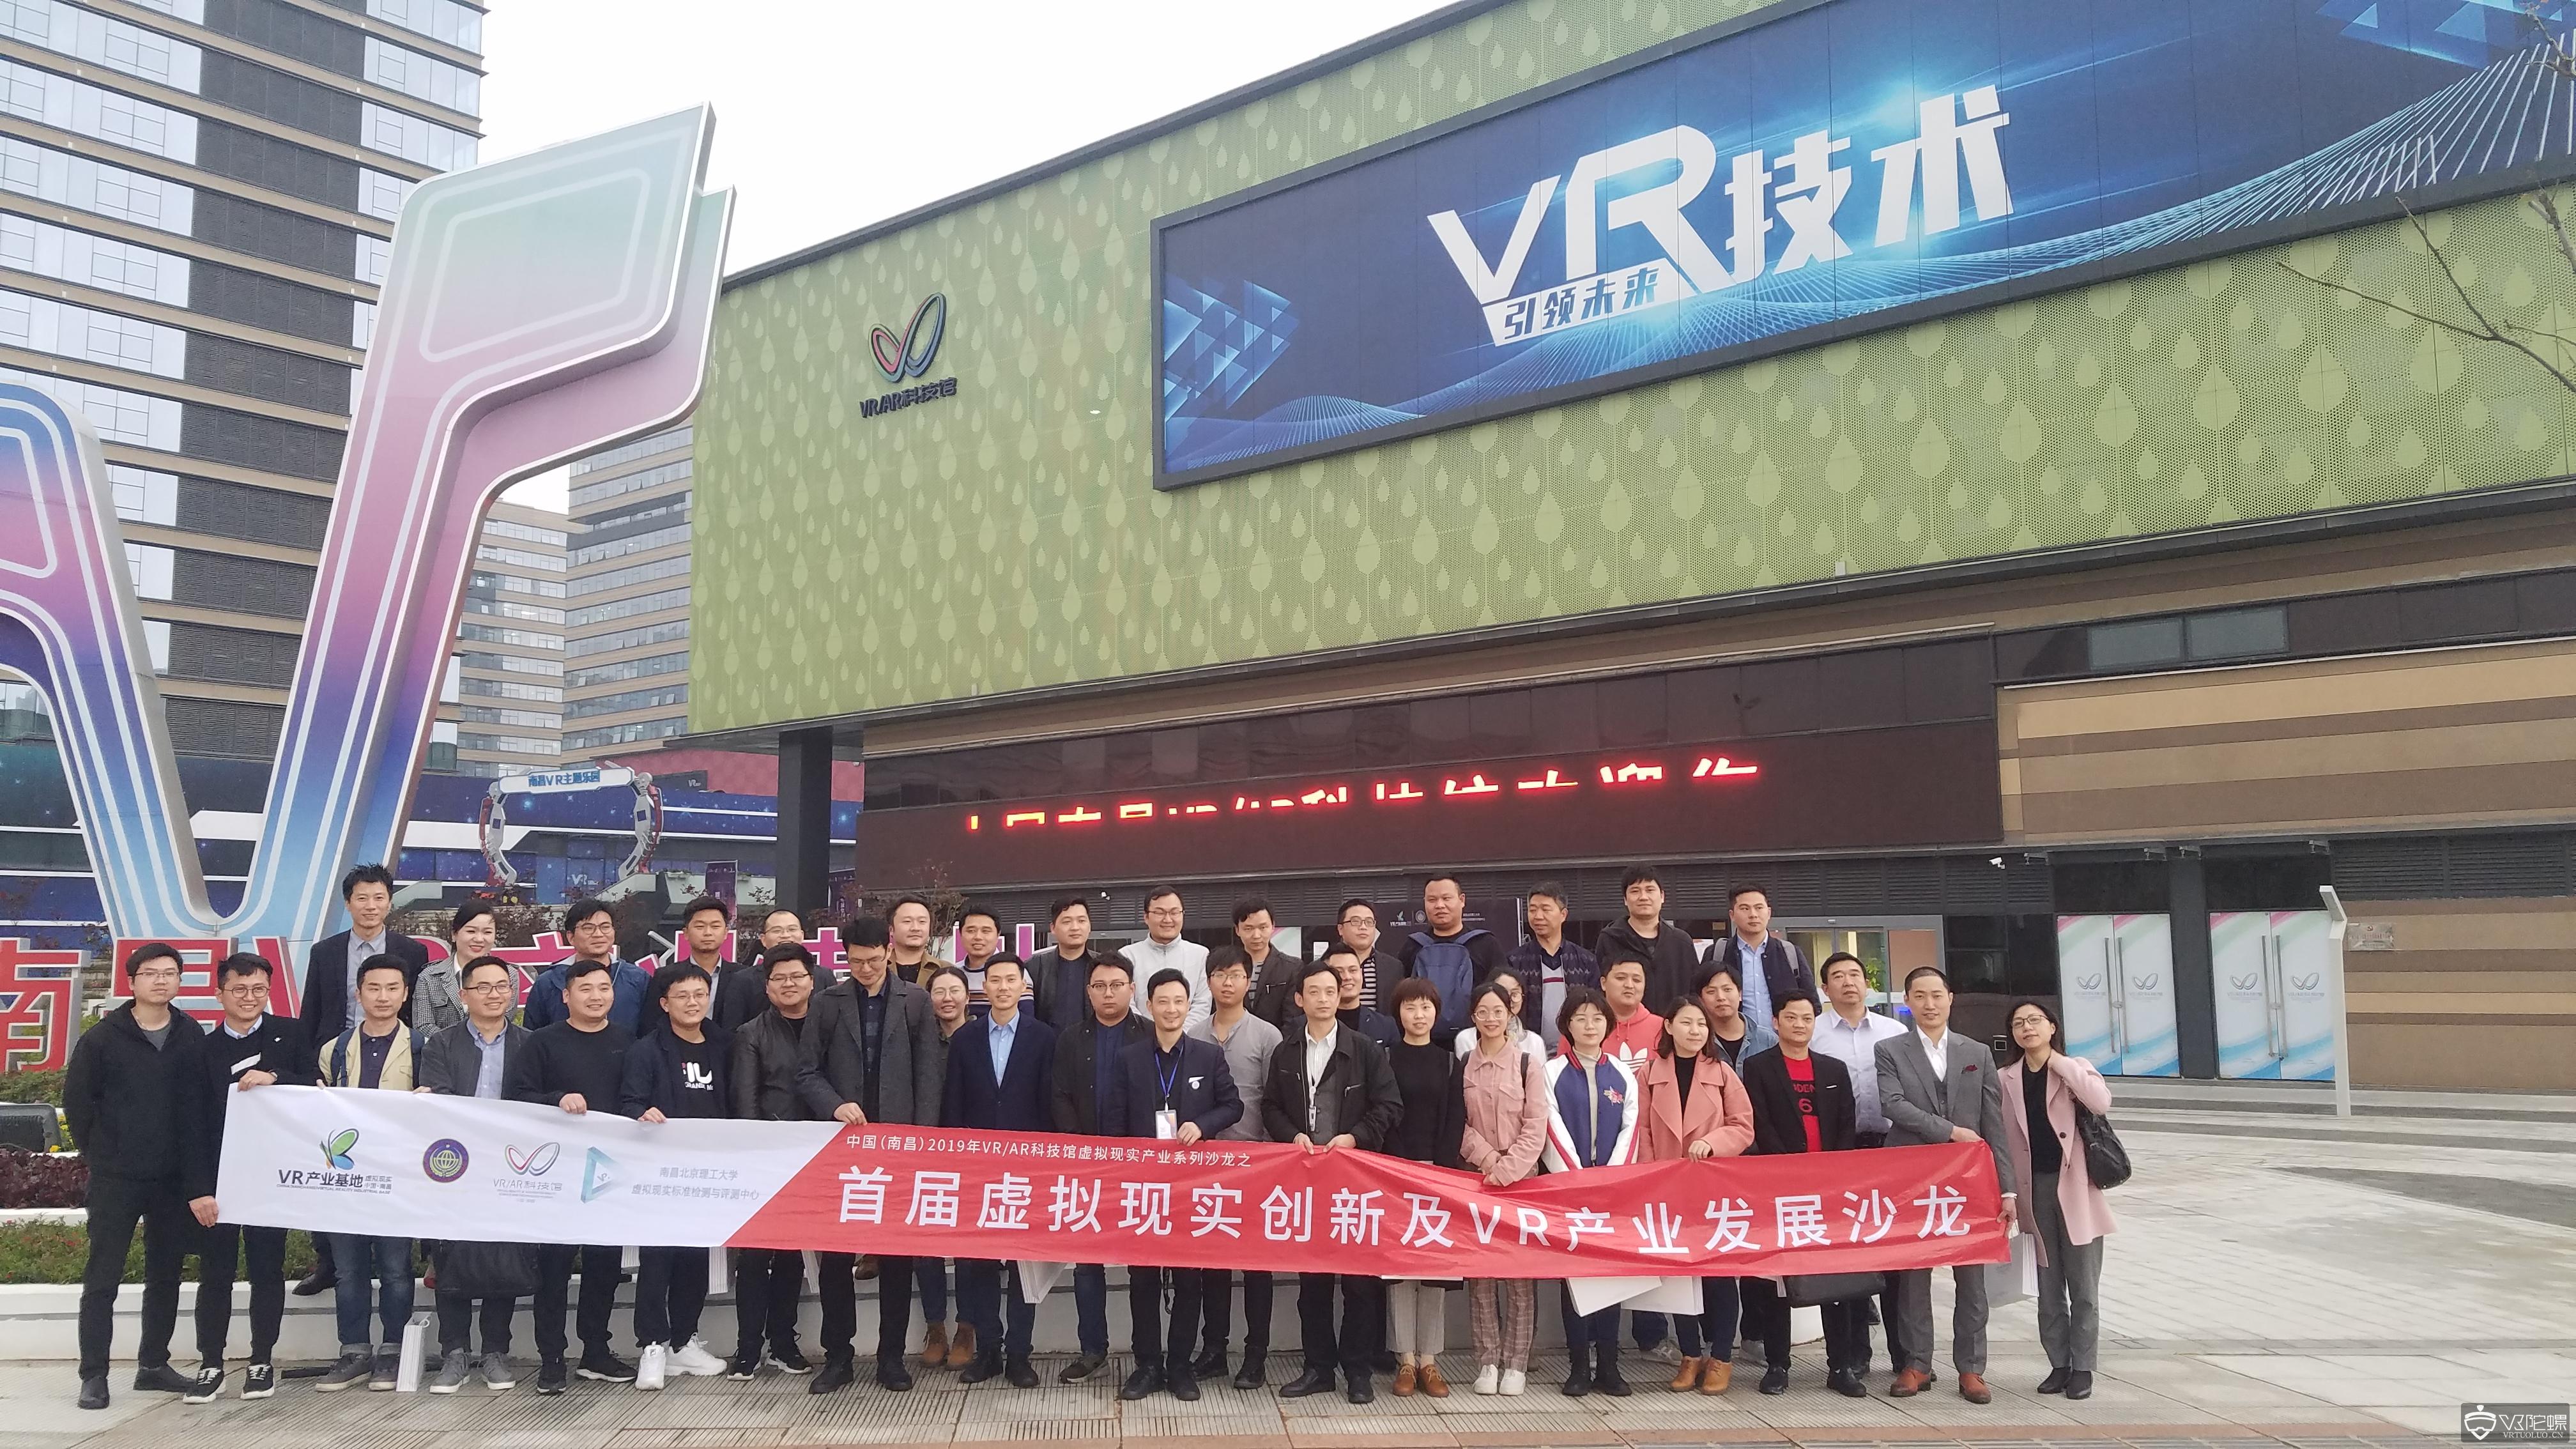 首届VR创新及产业发展沙龙于南昌VR/AR科技馆举行